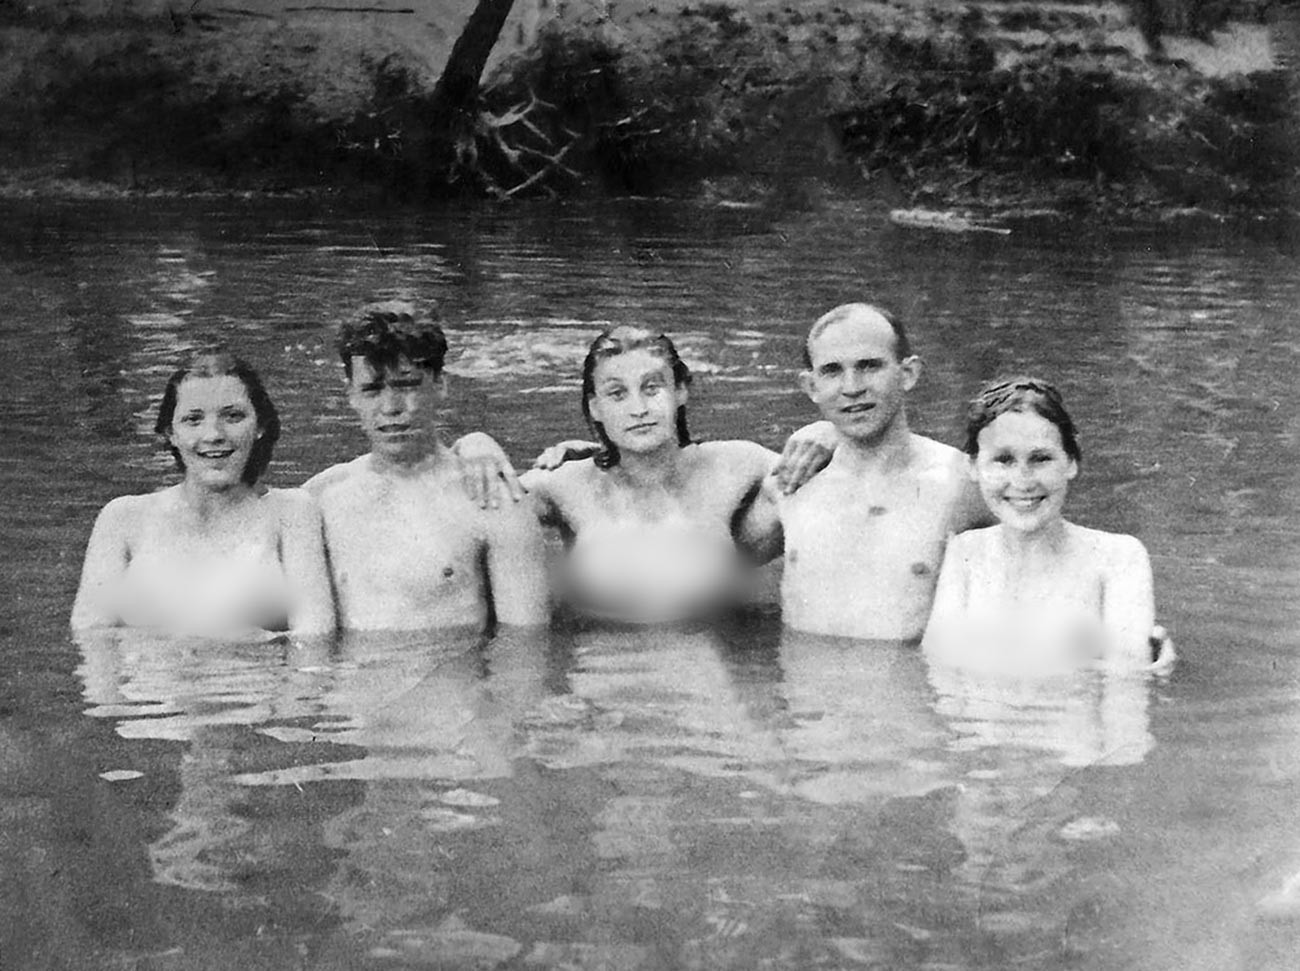 モスクワ川で泳ぐ工場「スタンダルトベトン」のコムソモール員たち。1940年